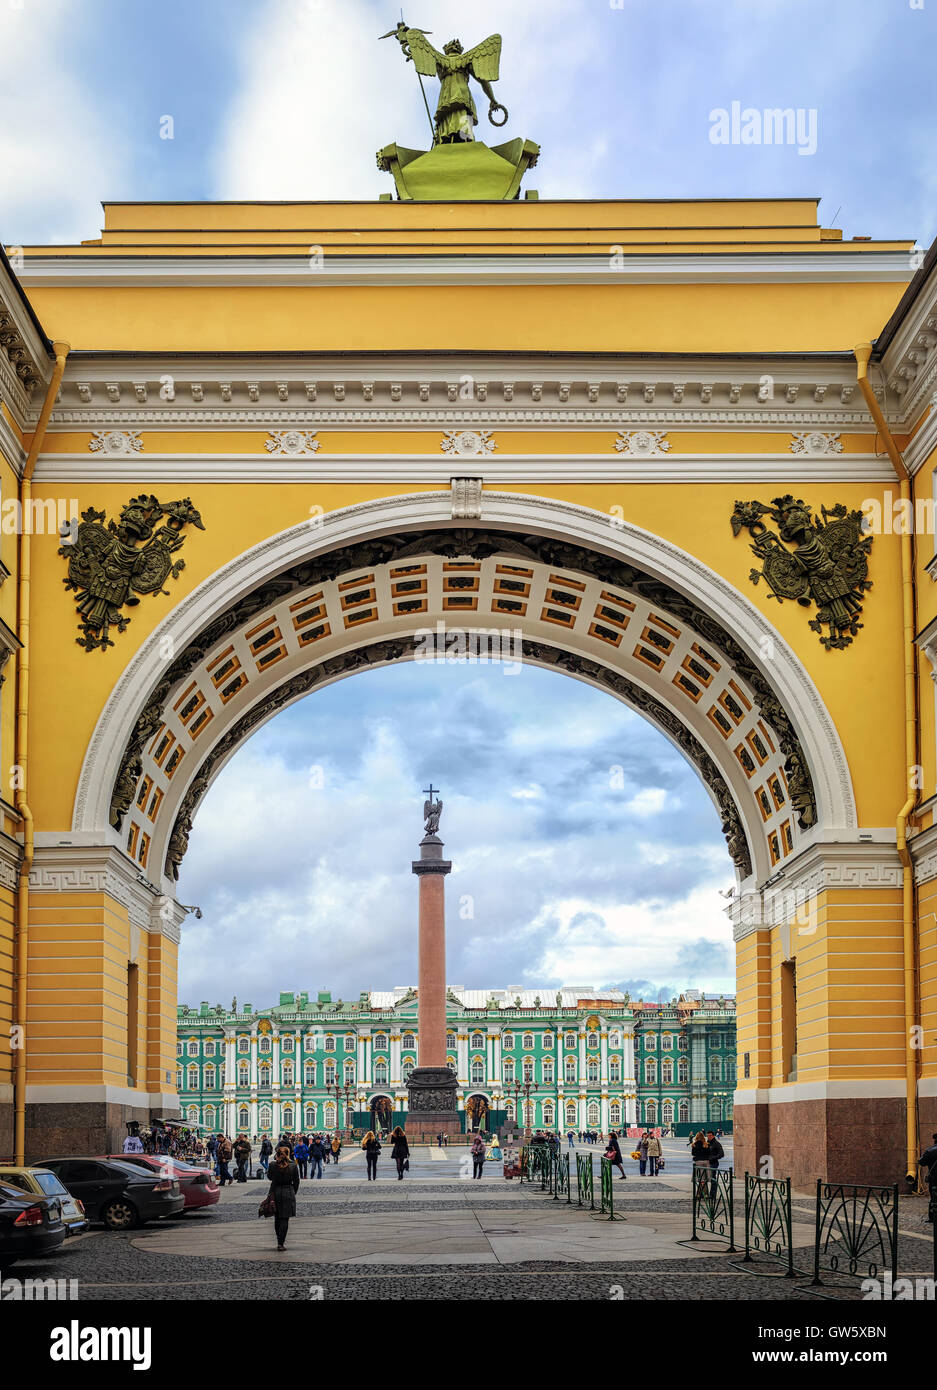 Palacio de Invierno vista a través del arco del Senado, San Petersburgo, Rusia Foto de stock